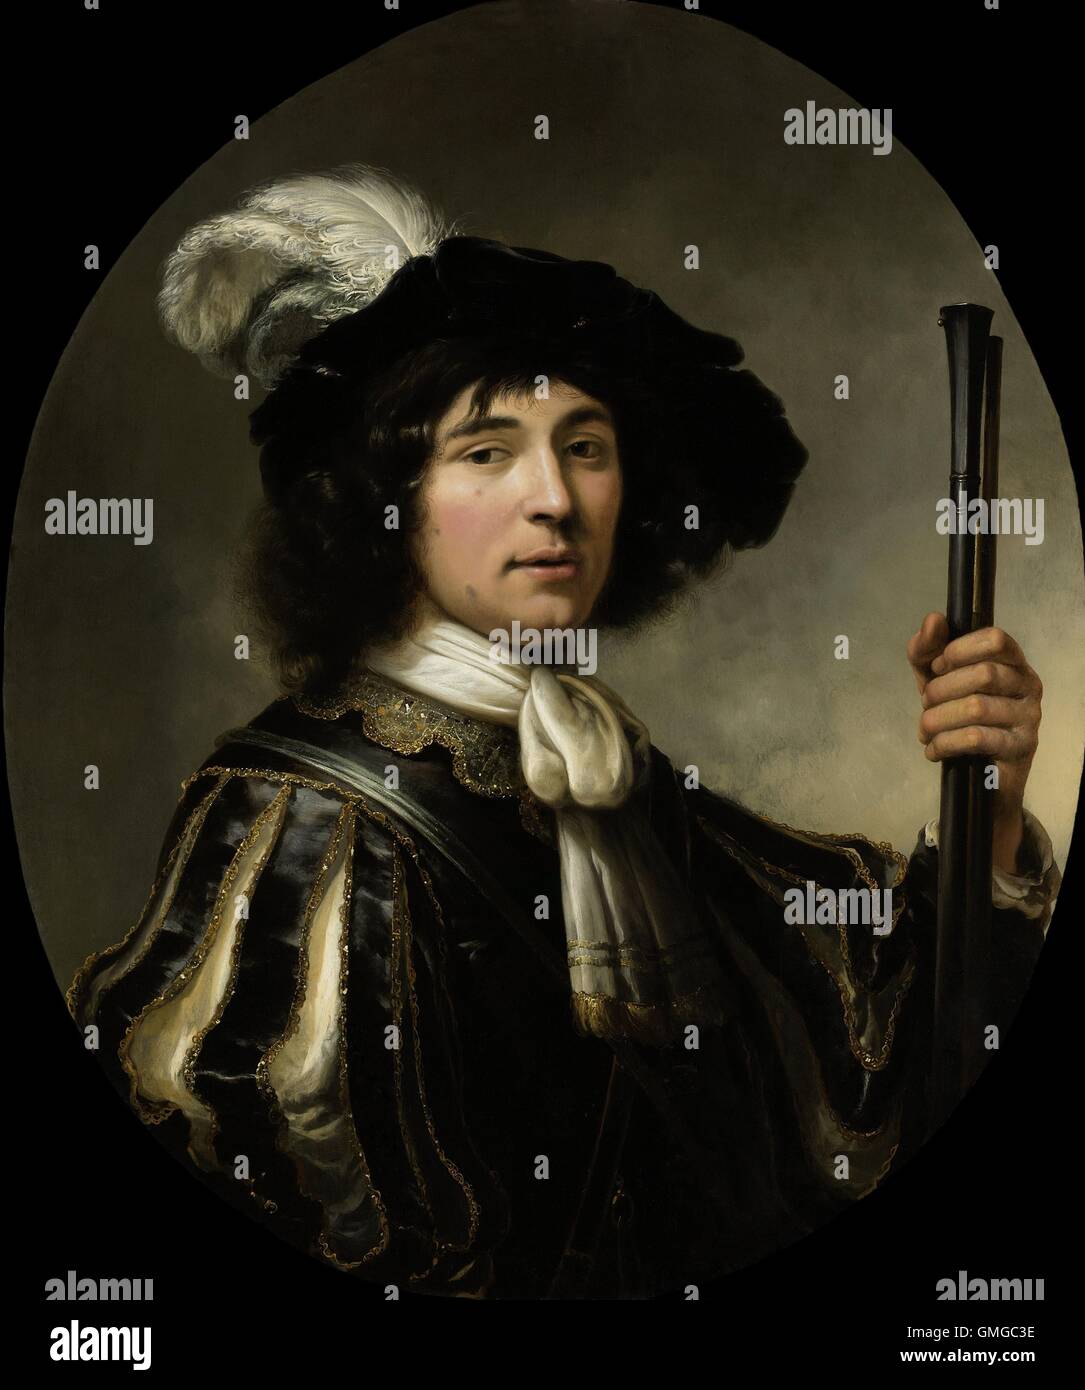 Ritratto di un giovane uomo, da Aelbert Cuyp, 1640-60, pittura olandese, olio su pannello. Gentleman Indossa un berretto piumato, ornati con camicia ricamata manicotti barrato, e un collare jeweled. Nella mano sinistra egli detiene la canna di un fucile (BSLOC 2016 3 132) Foto Stock